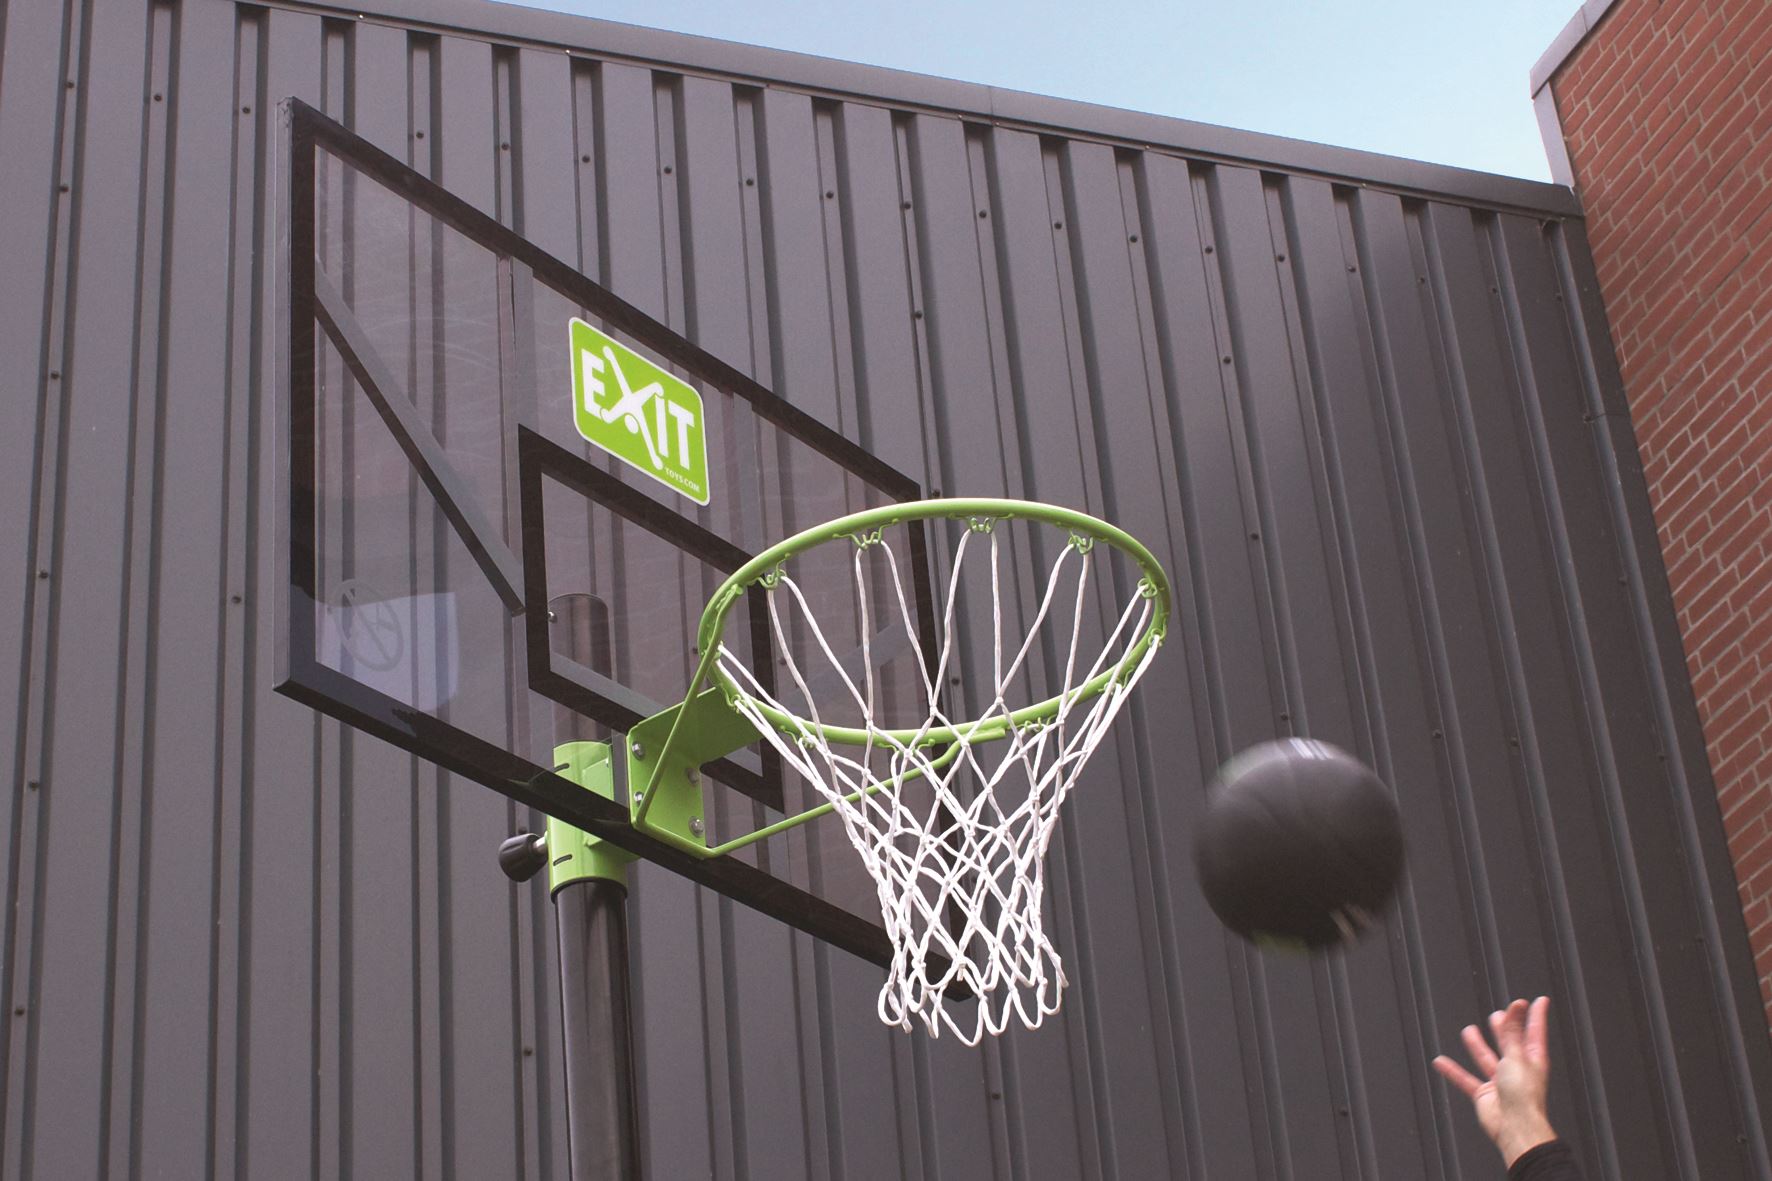 EXIT-Comet-verplaatsbaar-basketbalbord-groen-zwart